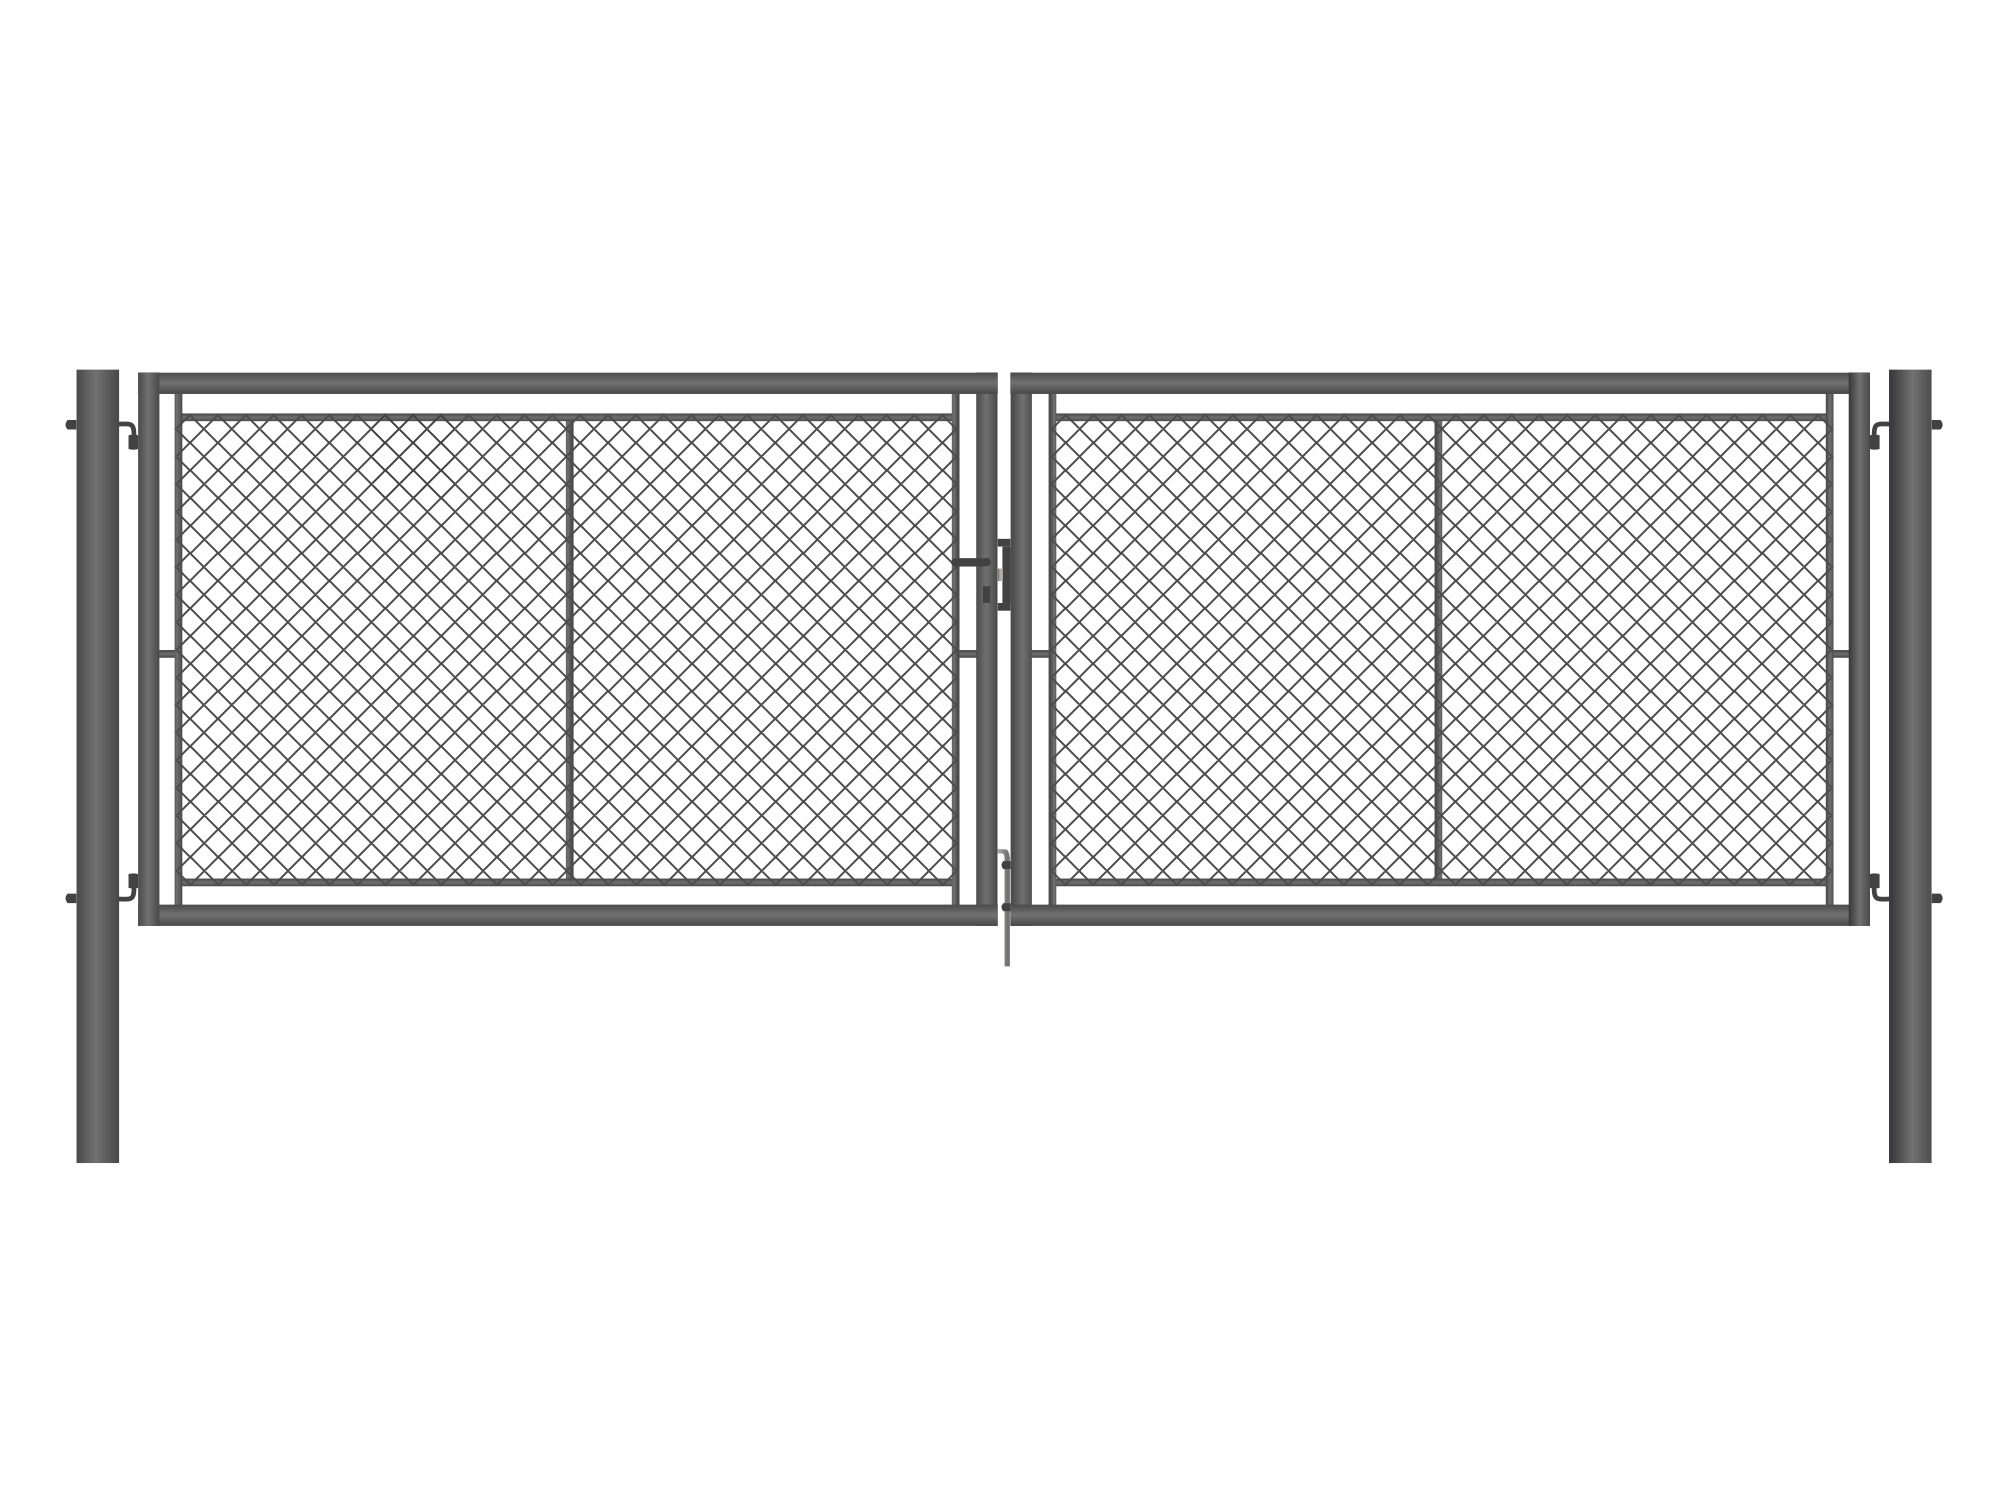 Brána zahradní dvoukřídlá antracit, výška 100 x 400 cm, FAB, s výplní klasického pletiva PLOTY Sklad5 9885 535